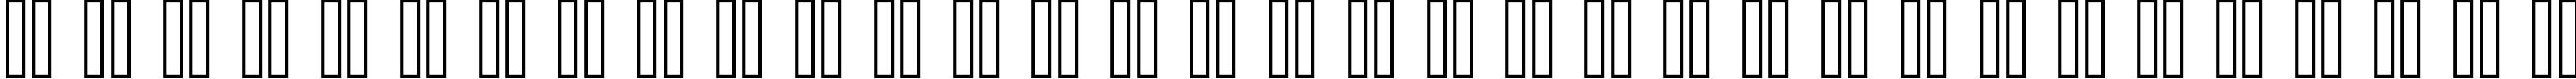 Пример написания русского алфавита шрифтом standard 09_65